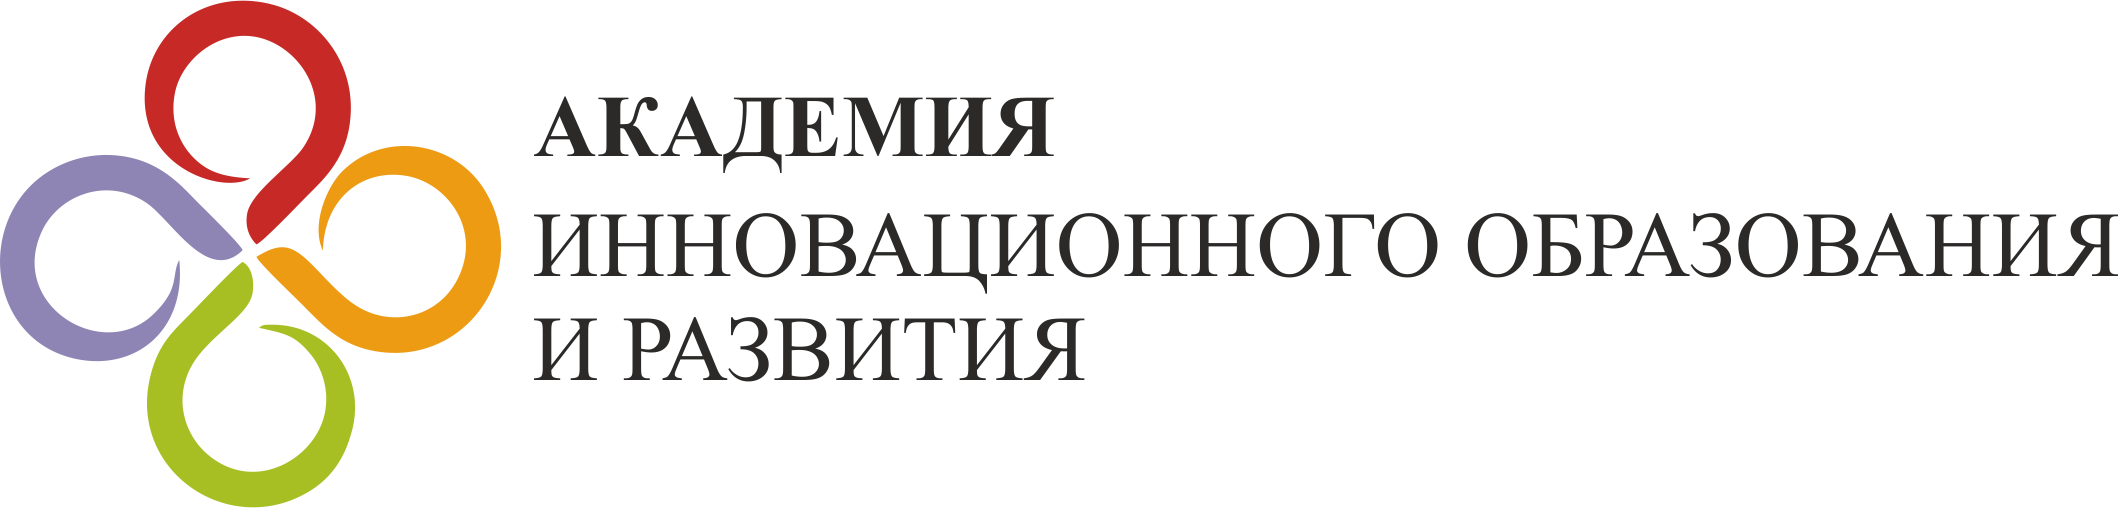 Логотип Академии инновационного образования и развития